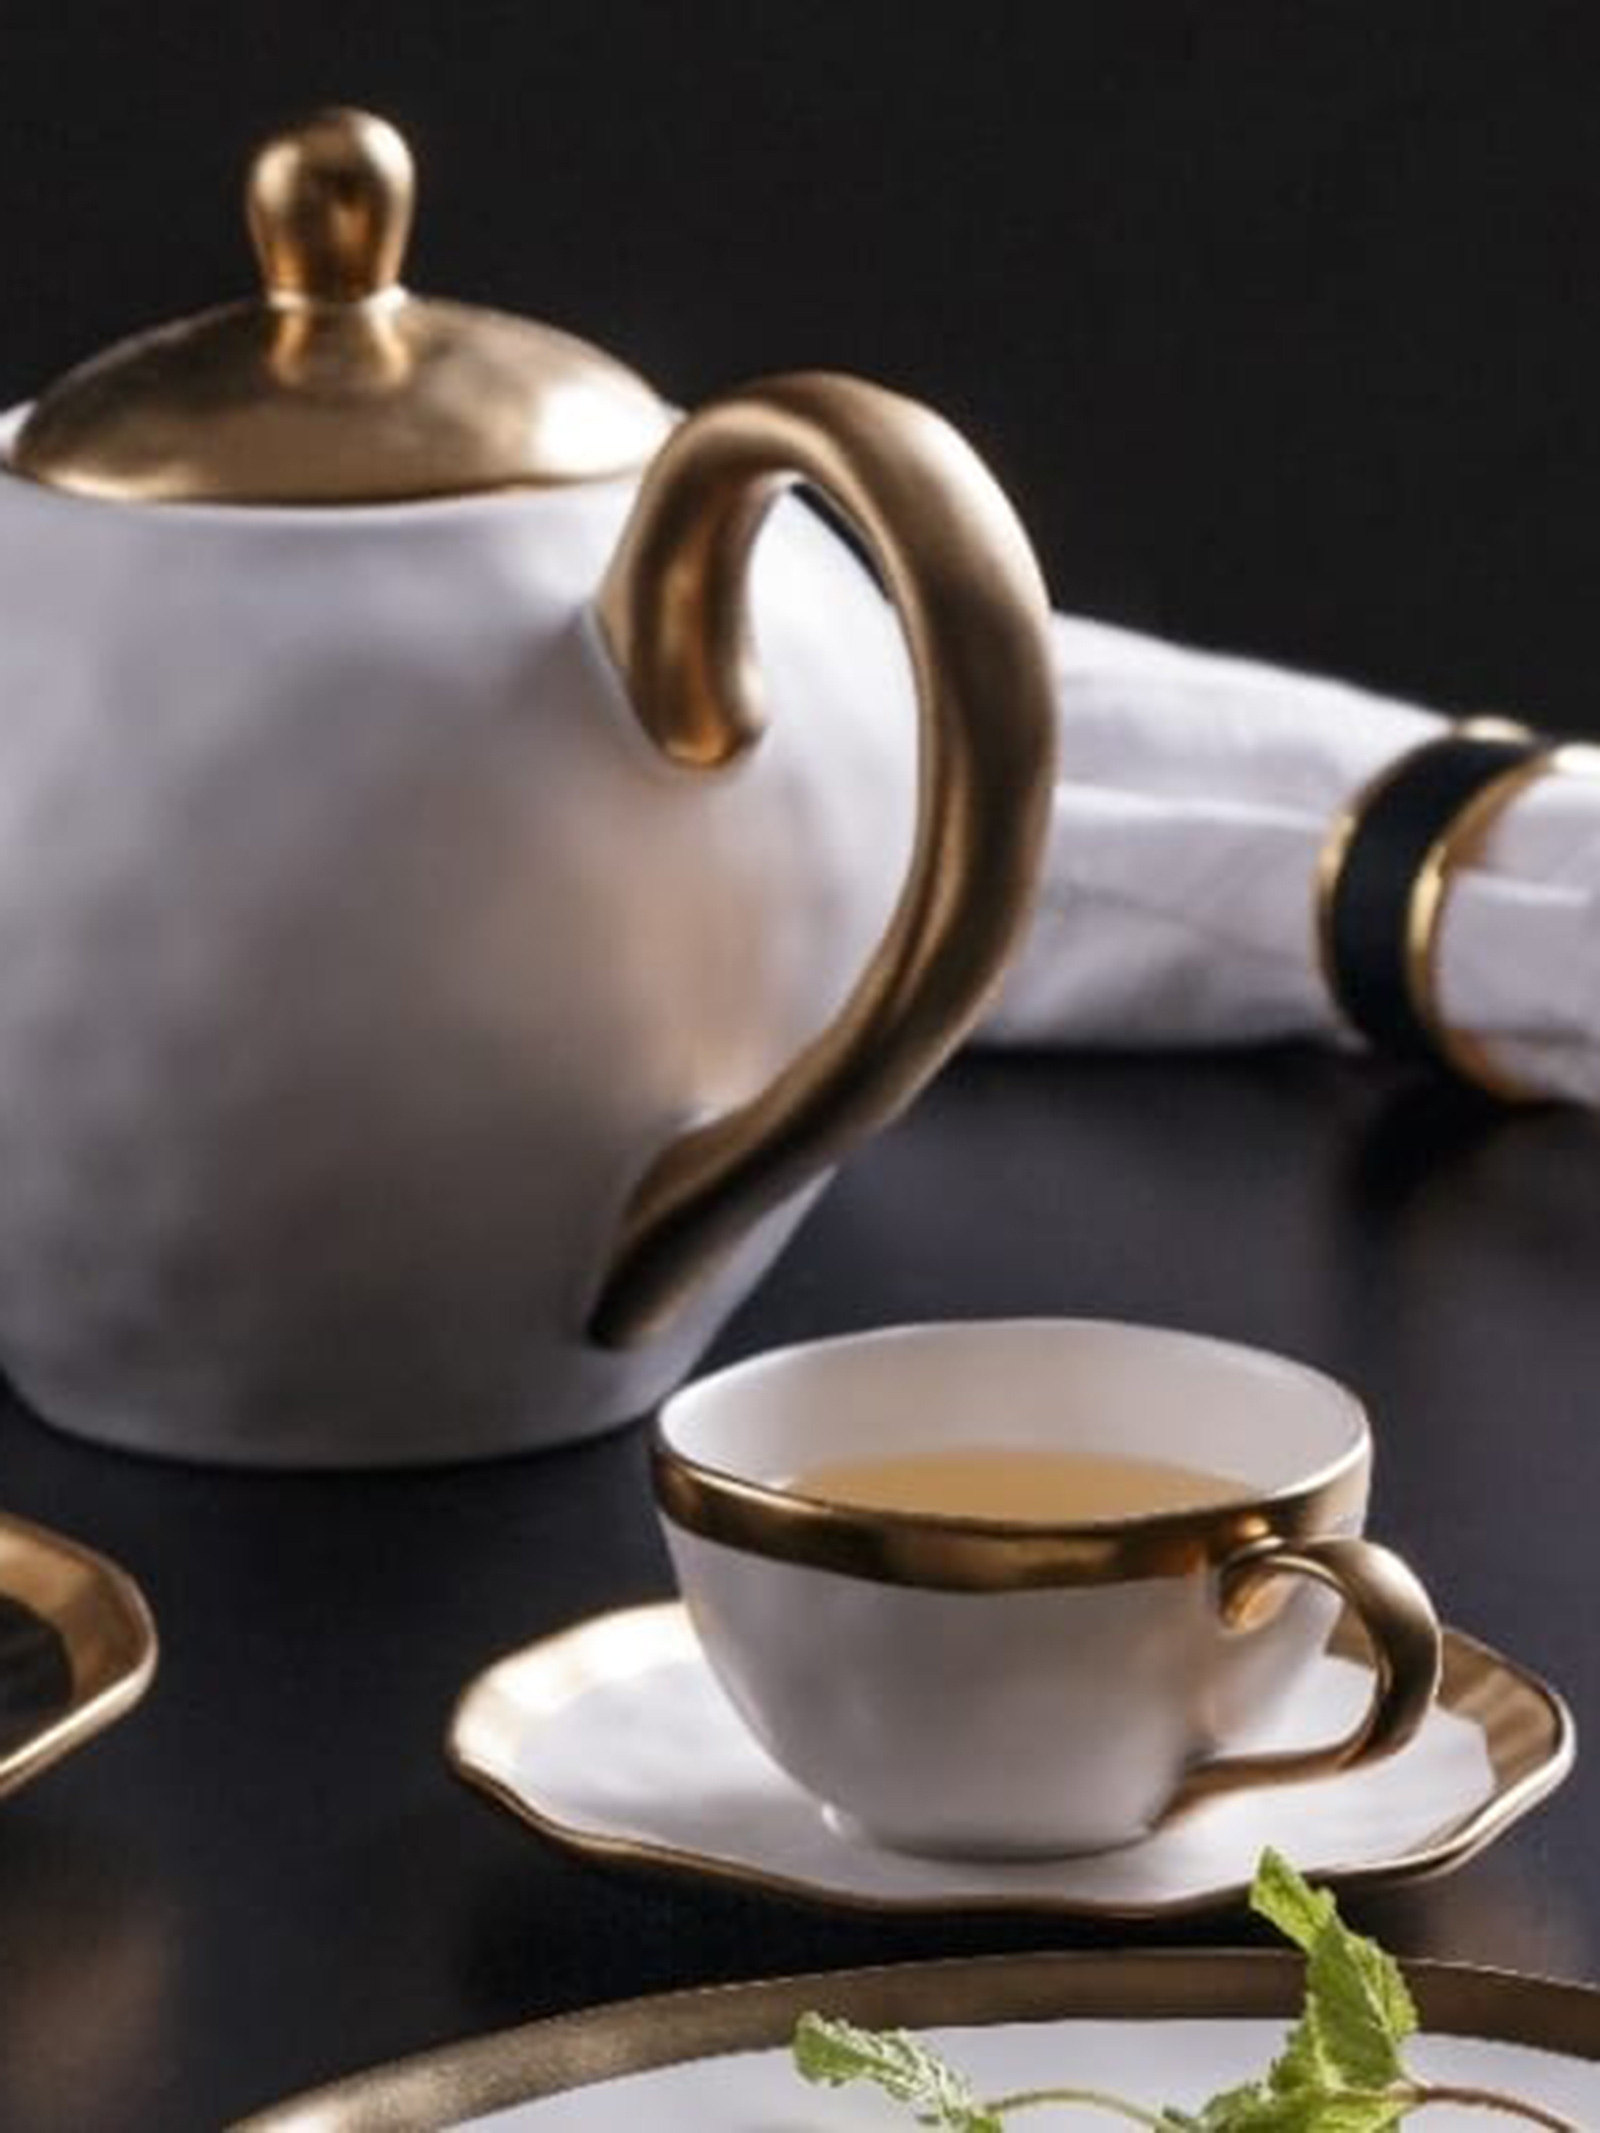 Bule Para Chá Porcelana Branco Com Dourado Dubai 1L Wolff